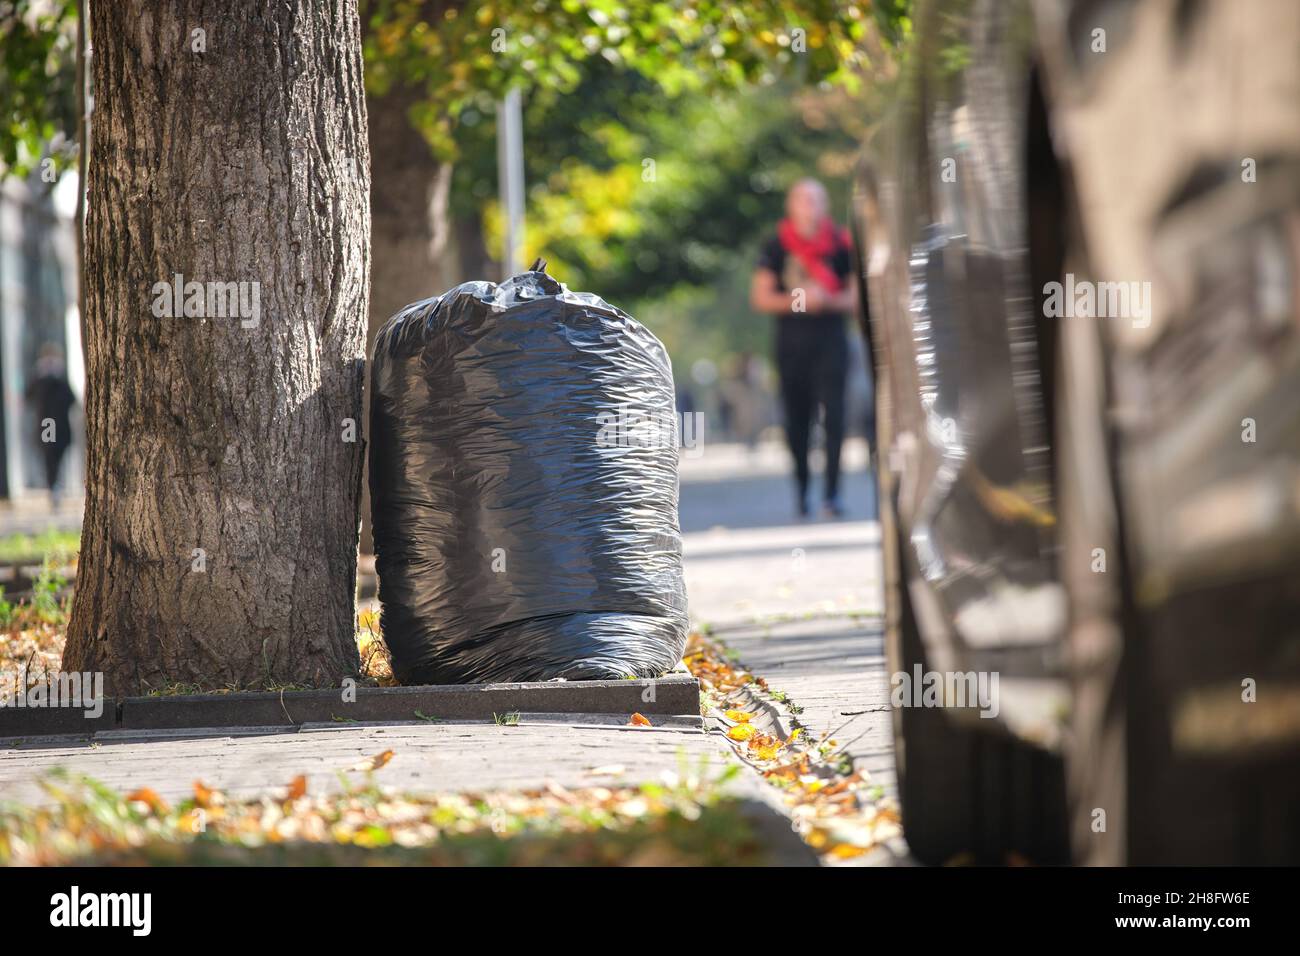 Pila de basura en la calle fotografías e imágenes de alta resolución -  Página 11 - Alamy